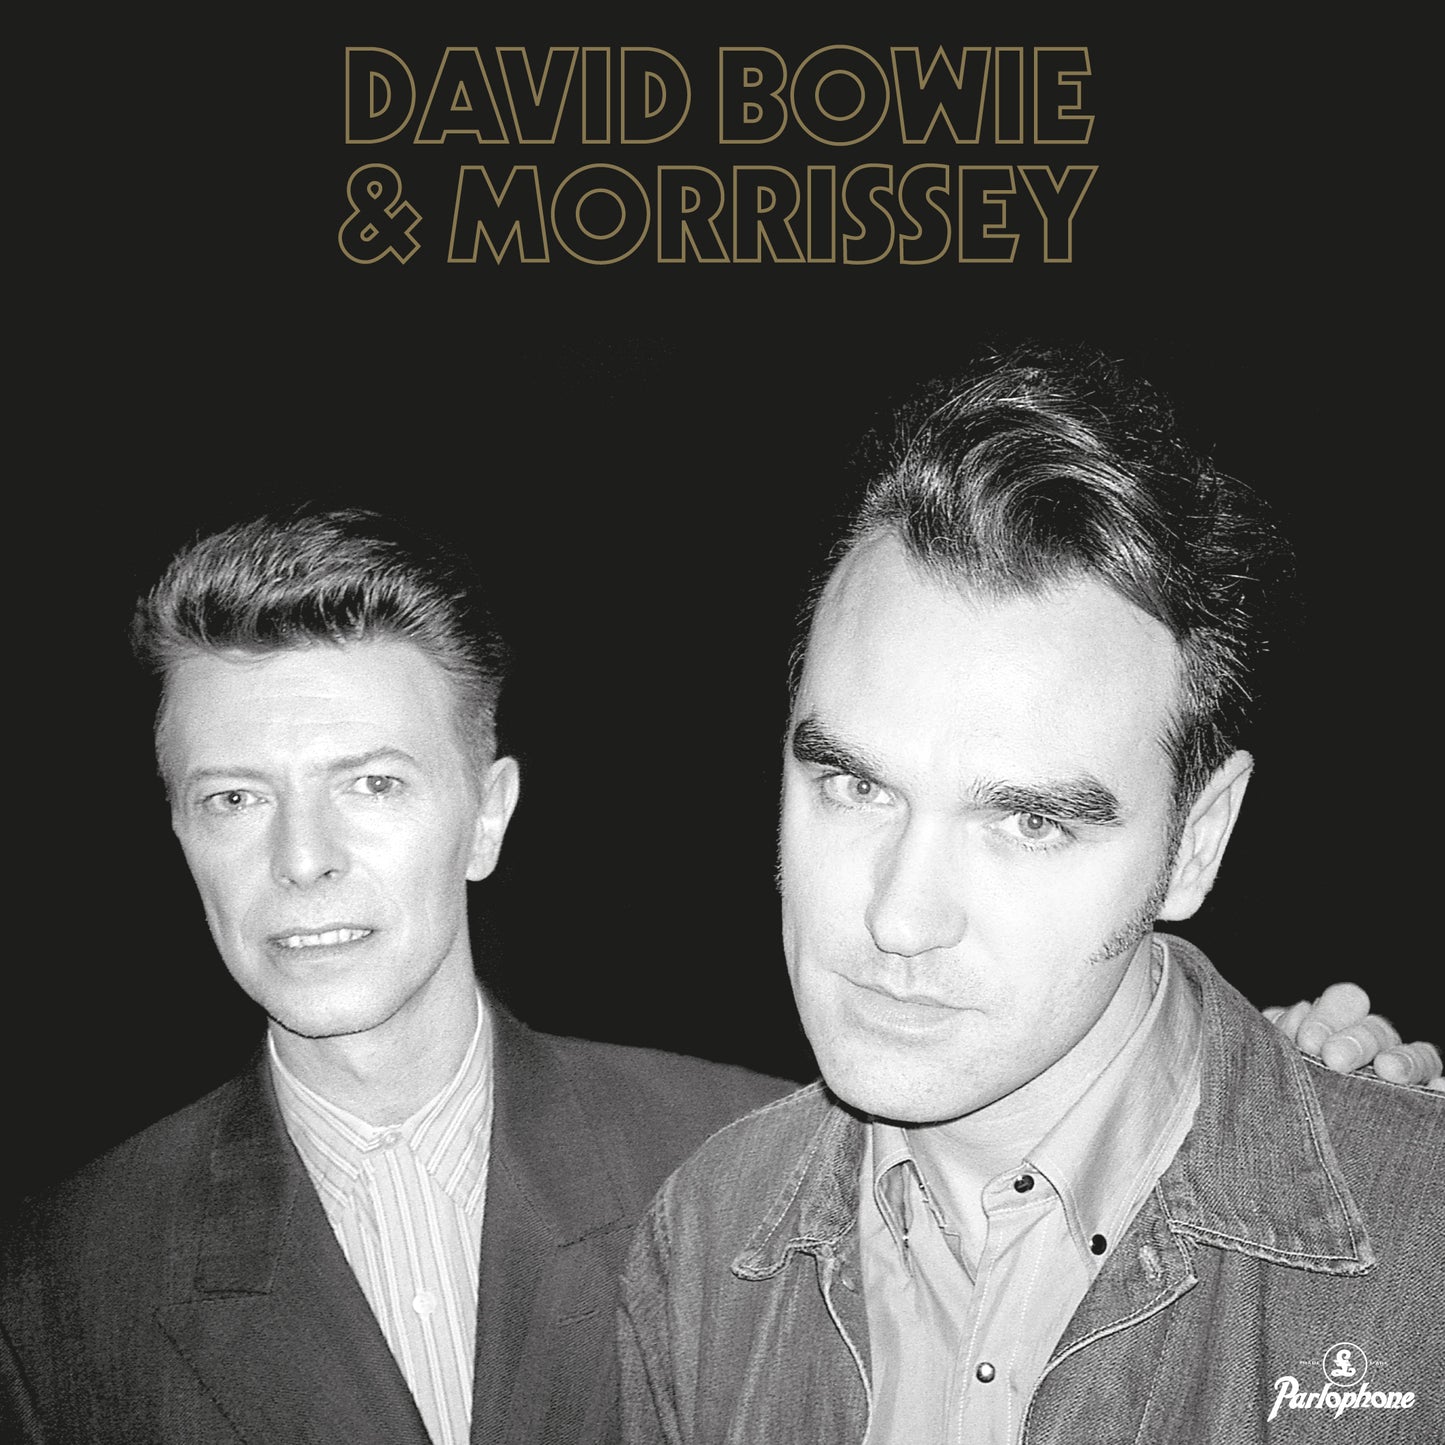 David Bowie & Morrissey 'Cosmic Dancer' 7"